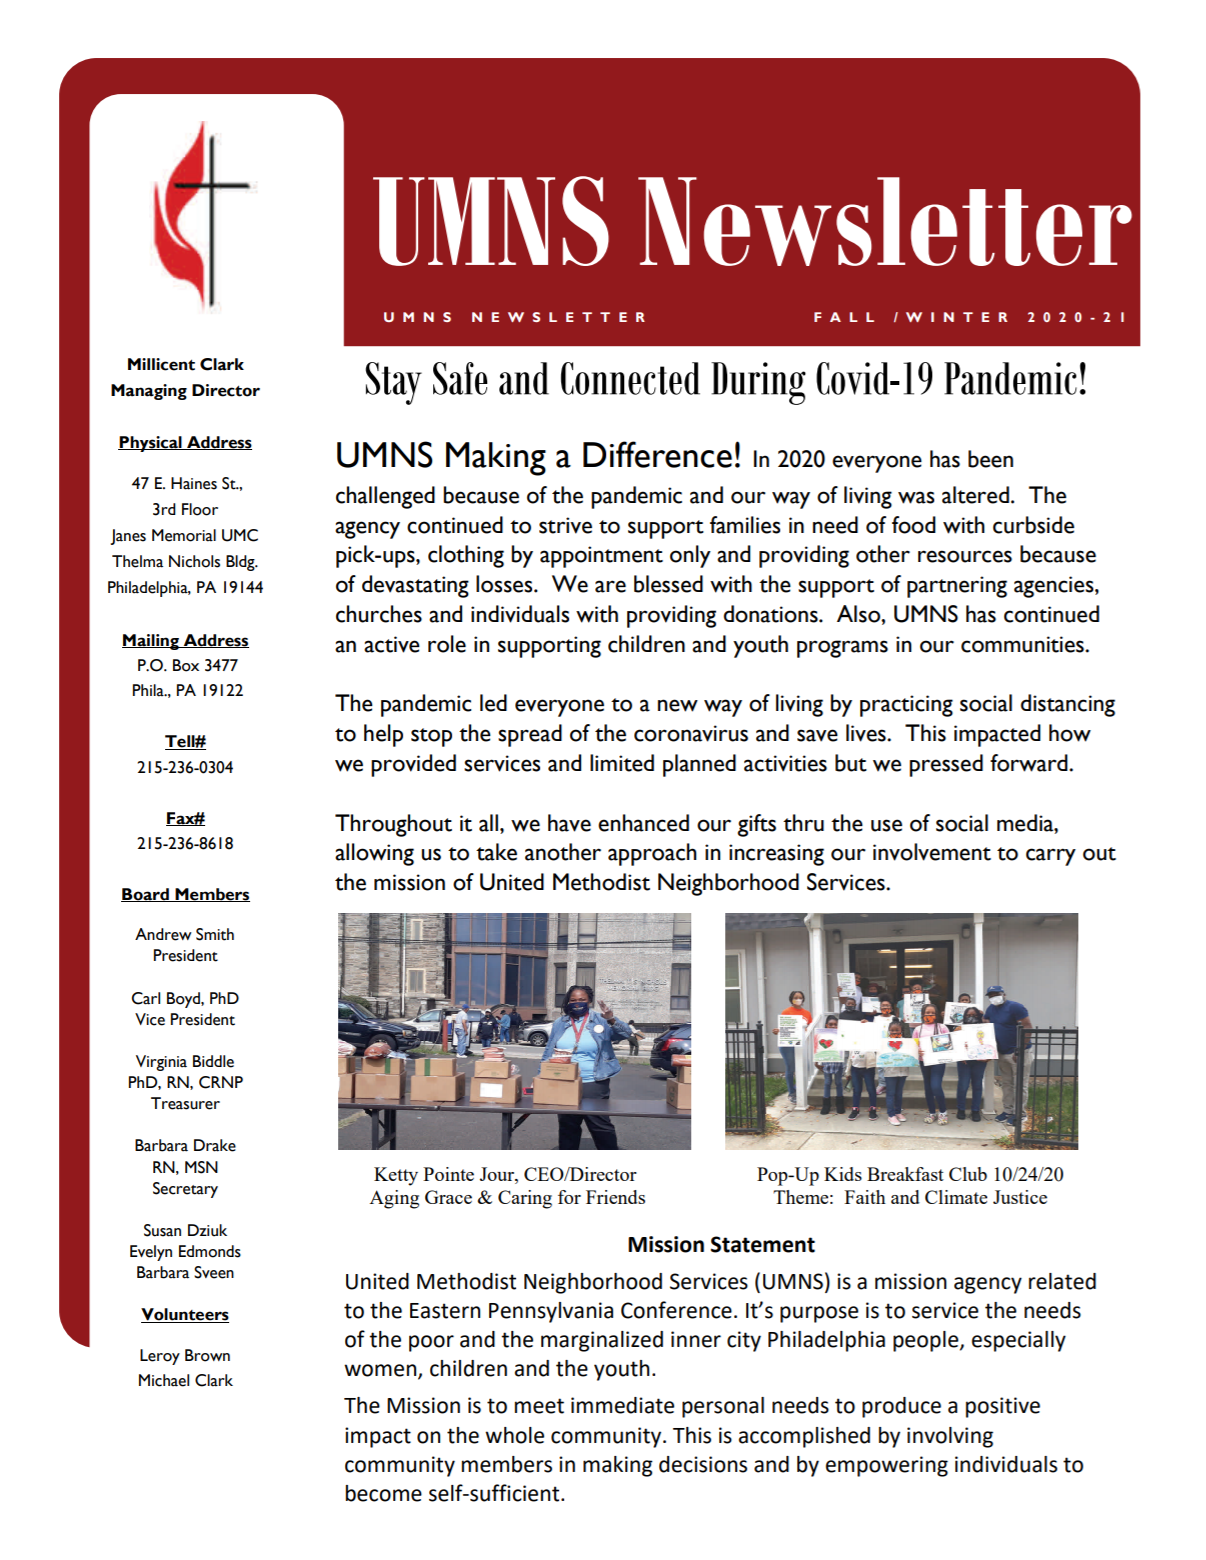 2020-21 Fall/Winter UMNS Newsletter